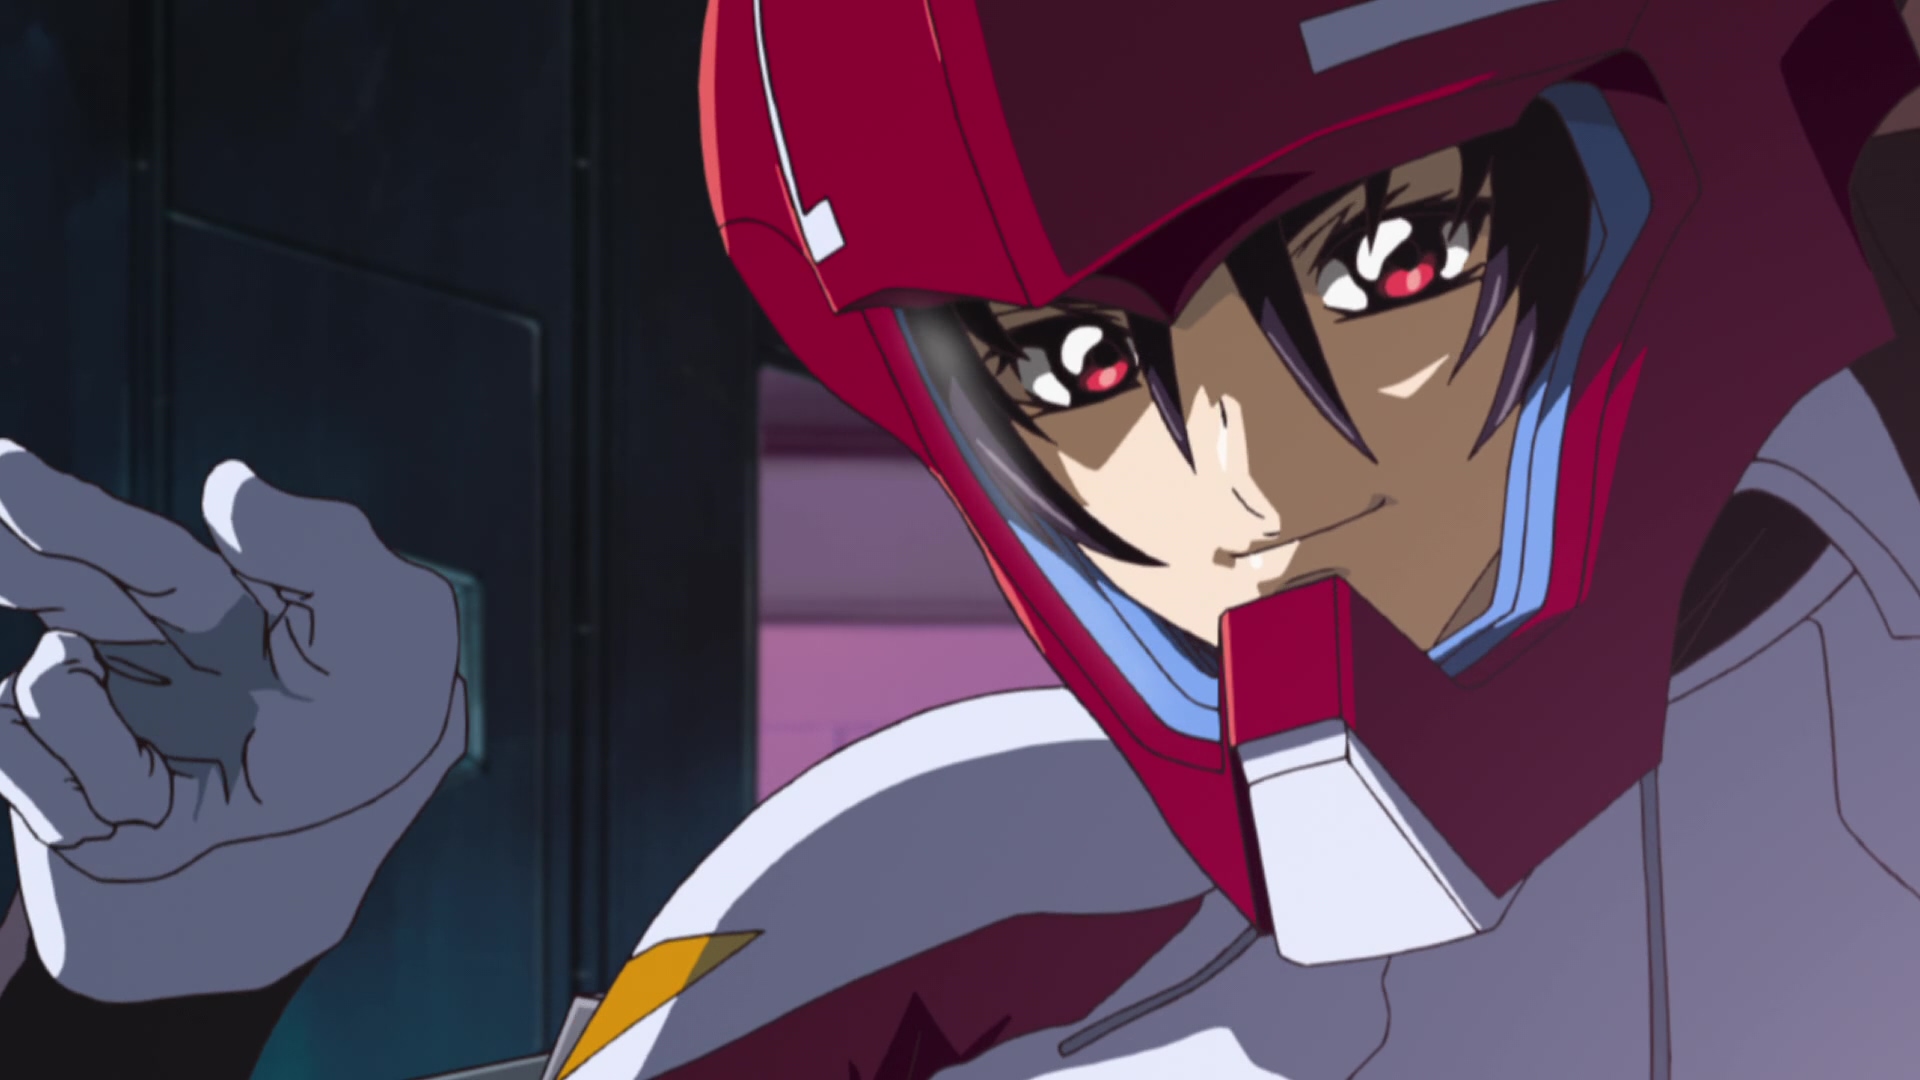 Anime 1920x1080 Mobile Suit Gundam SEED Destiny Mobile Suit Gundam anime screen shot anime screenshot Shinn Asuka